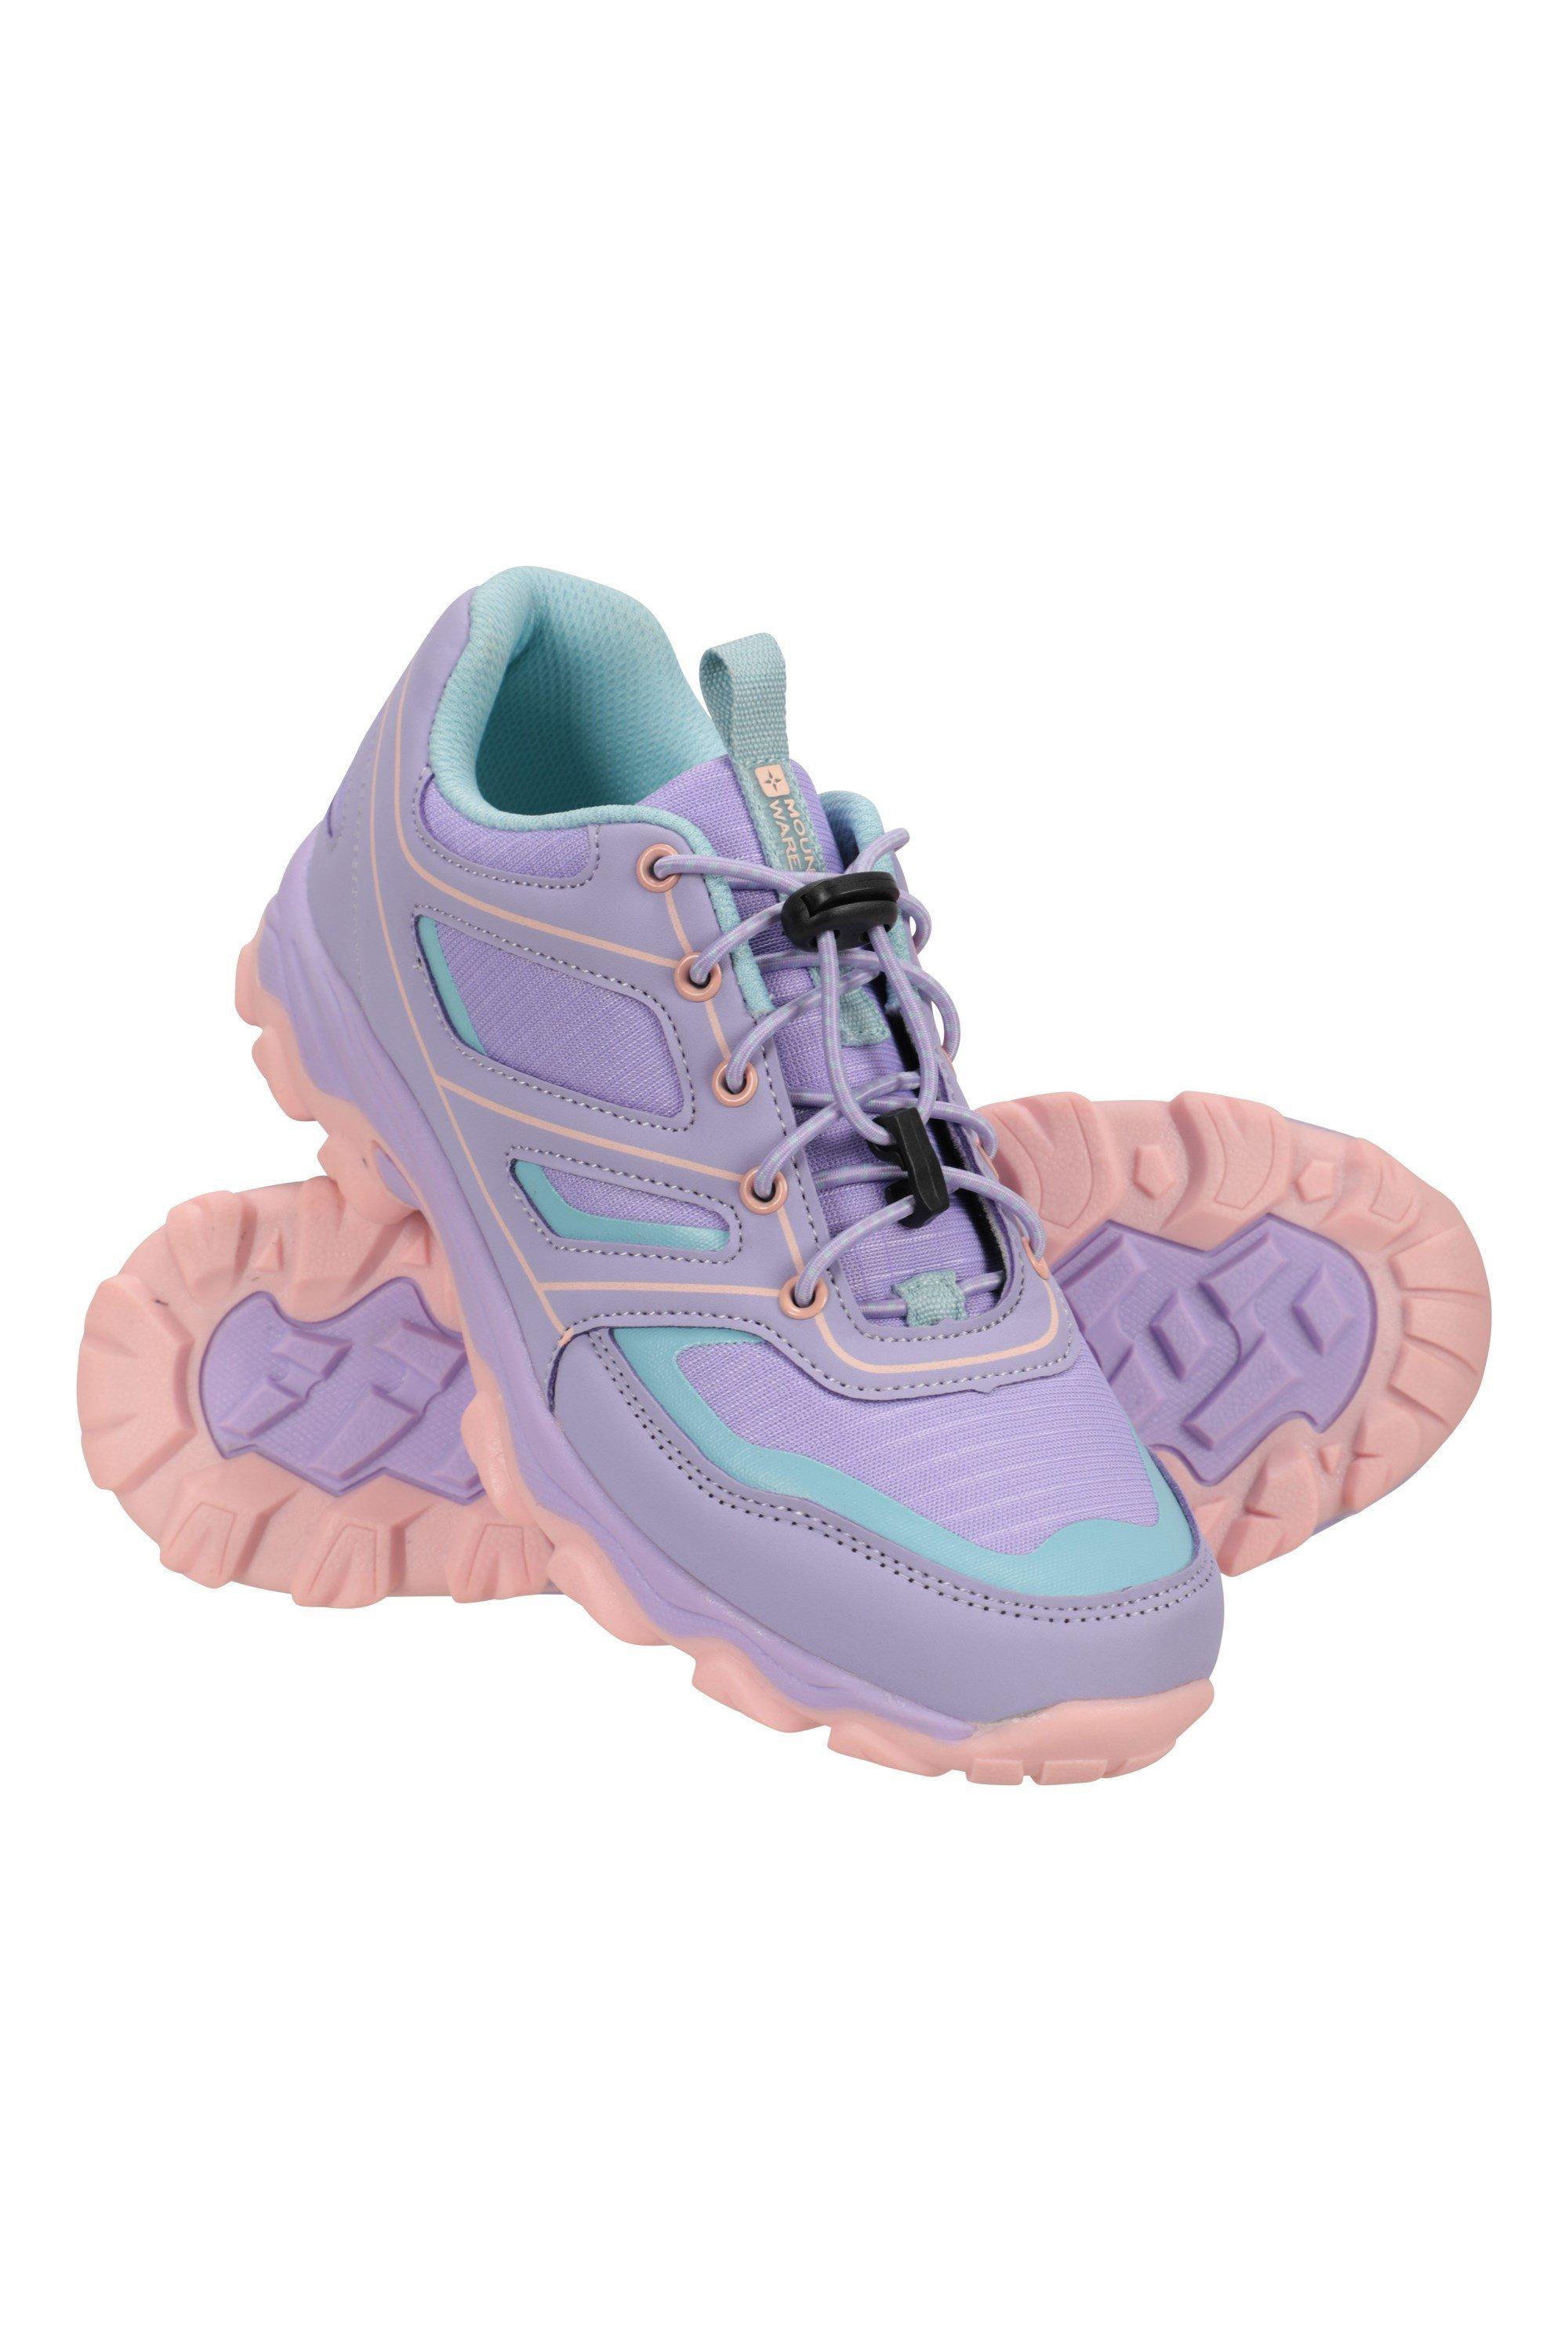 Кроссовки для бега на открытом воздухе, спортивная обувь Mountain Warehouse, фиолетовый горячая распродажа детская модная обувь для отдыха на открытом воздухе дышащая сетчатая обувь для бега 22 38